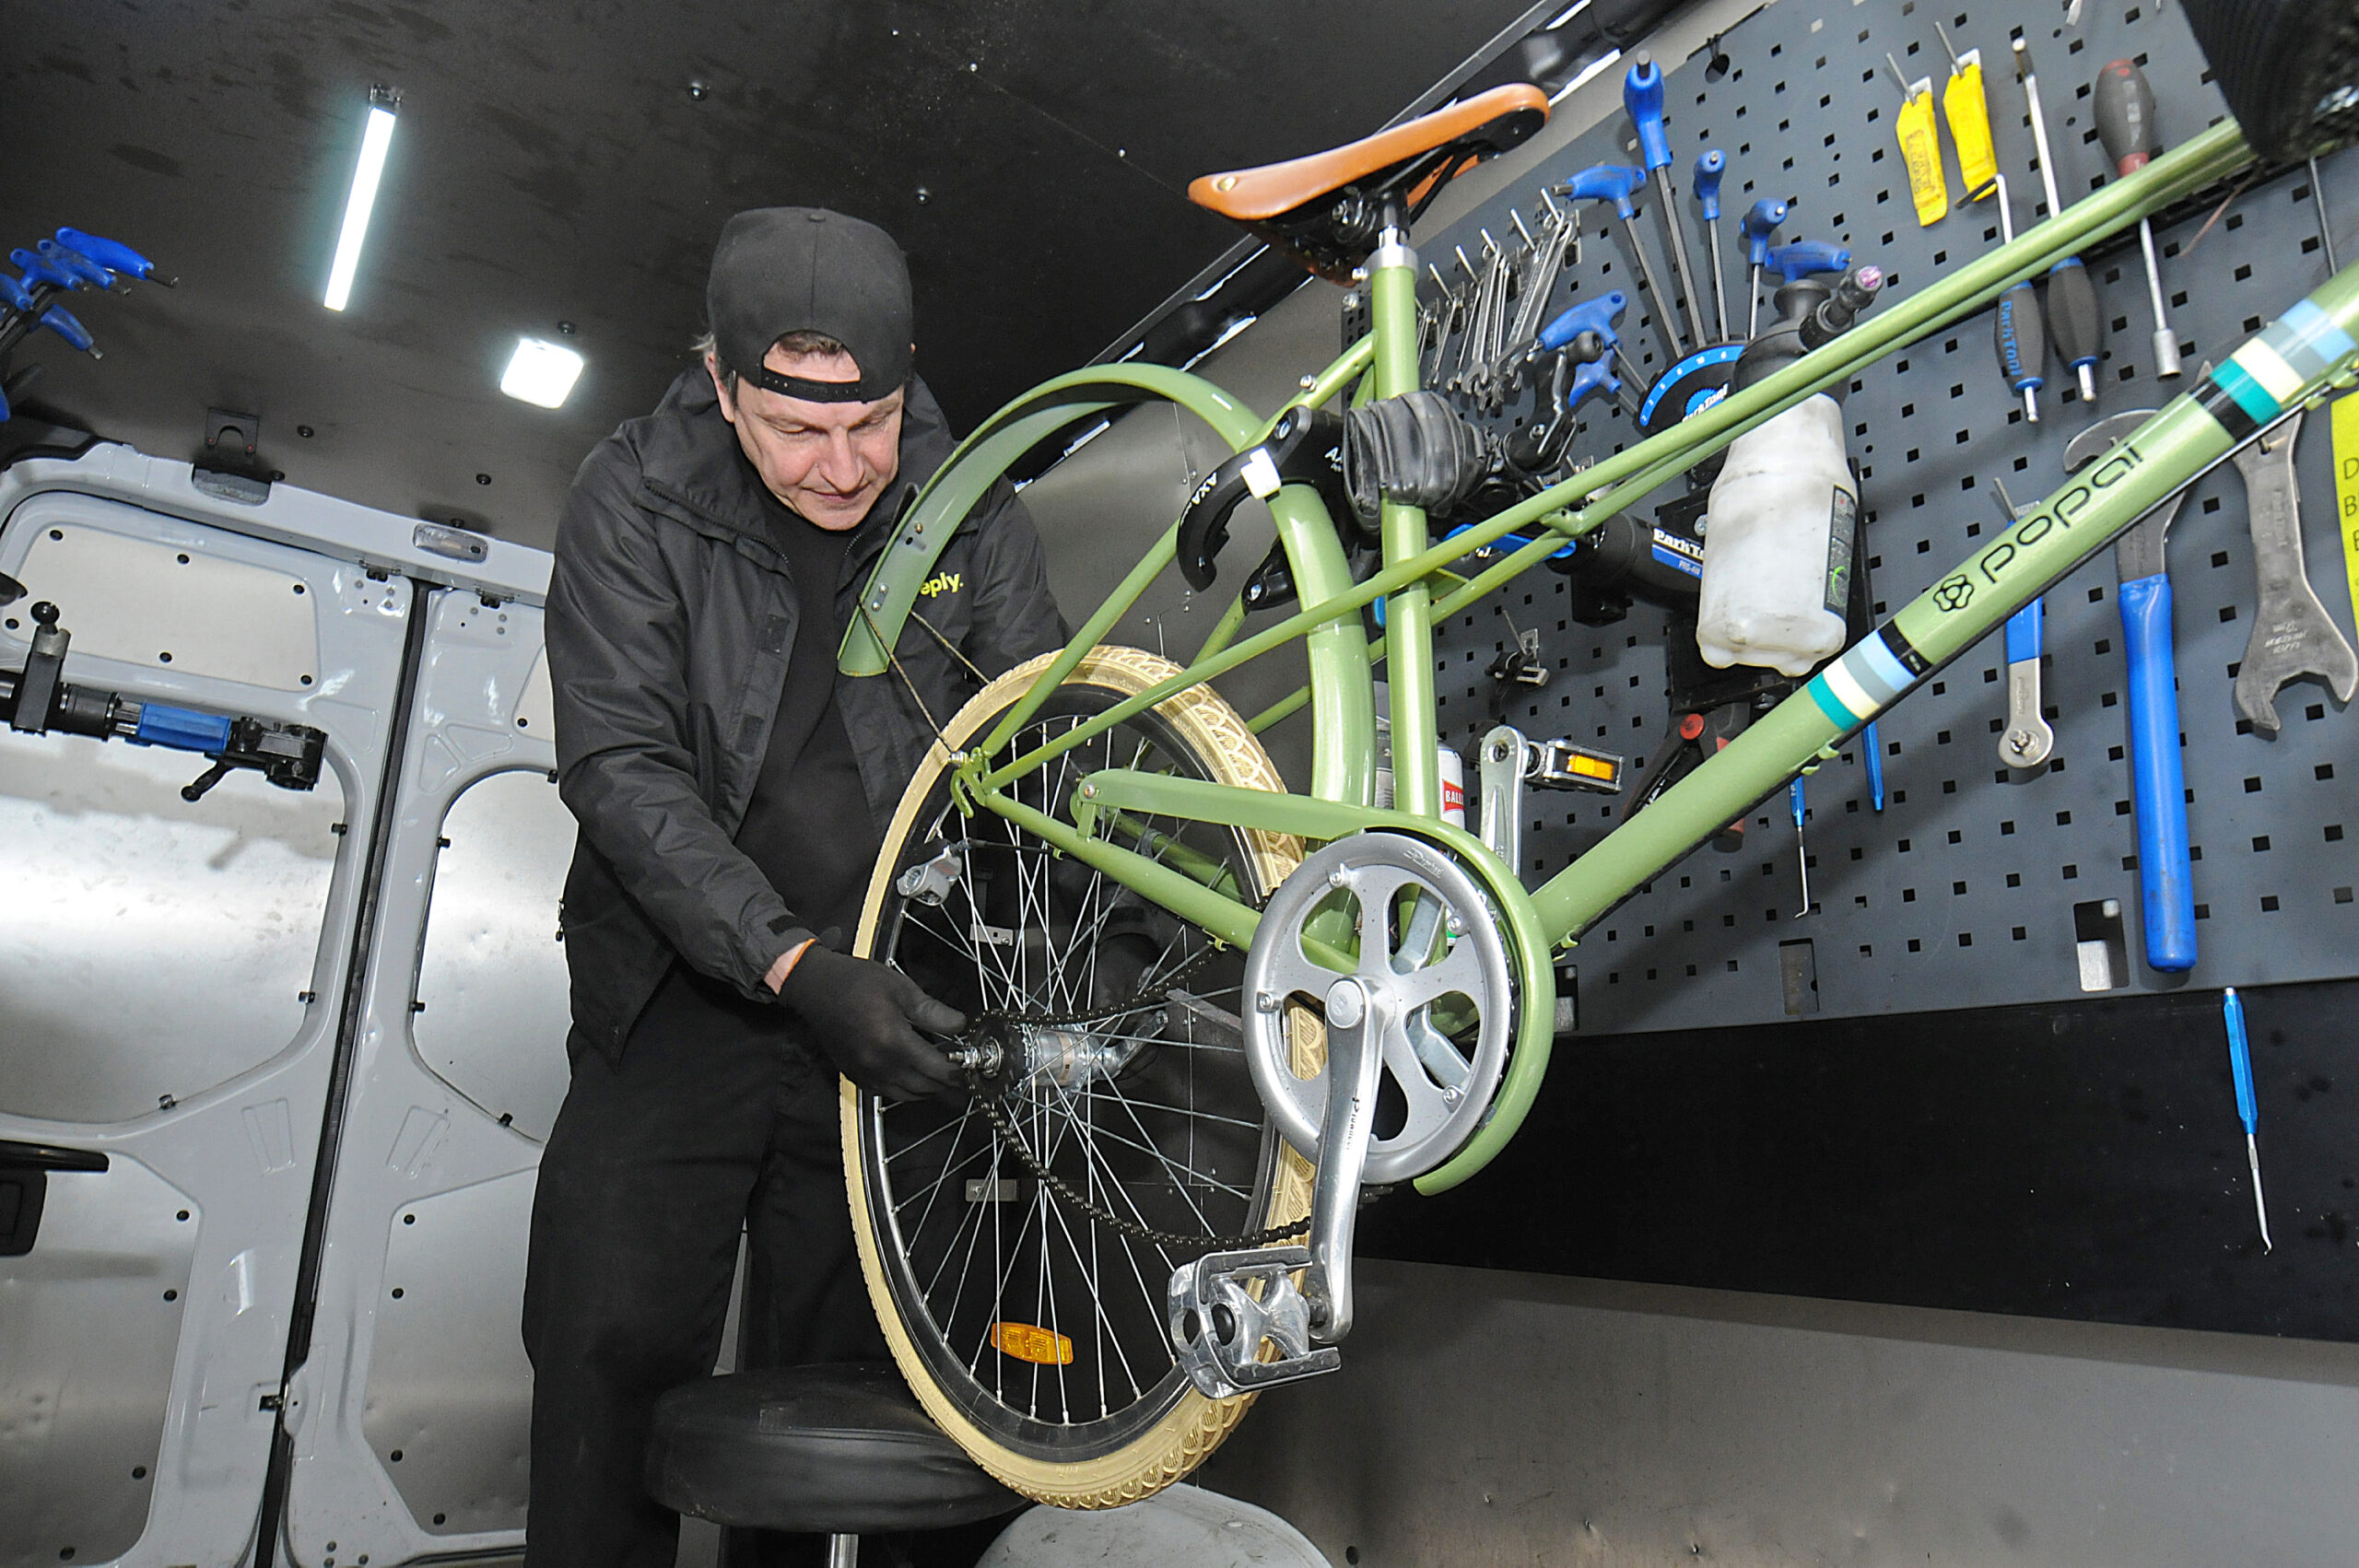 Christof von Bechtolsheim, Zweiradmechaniker bei „Yeply“, repariert das Fahrrad der MOPO-Reporterin.